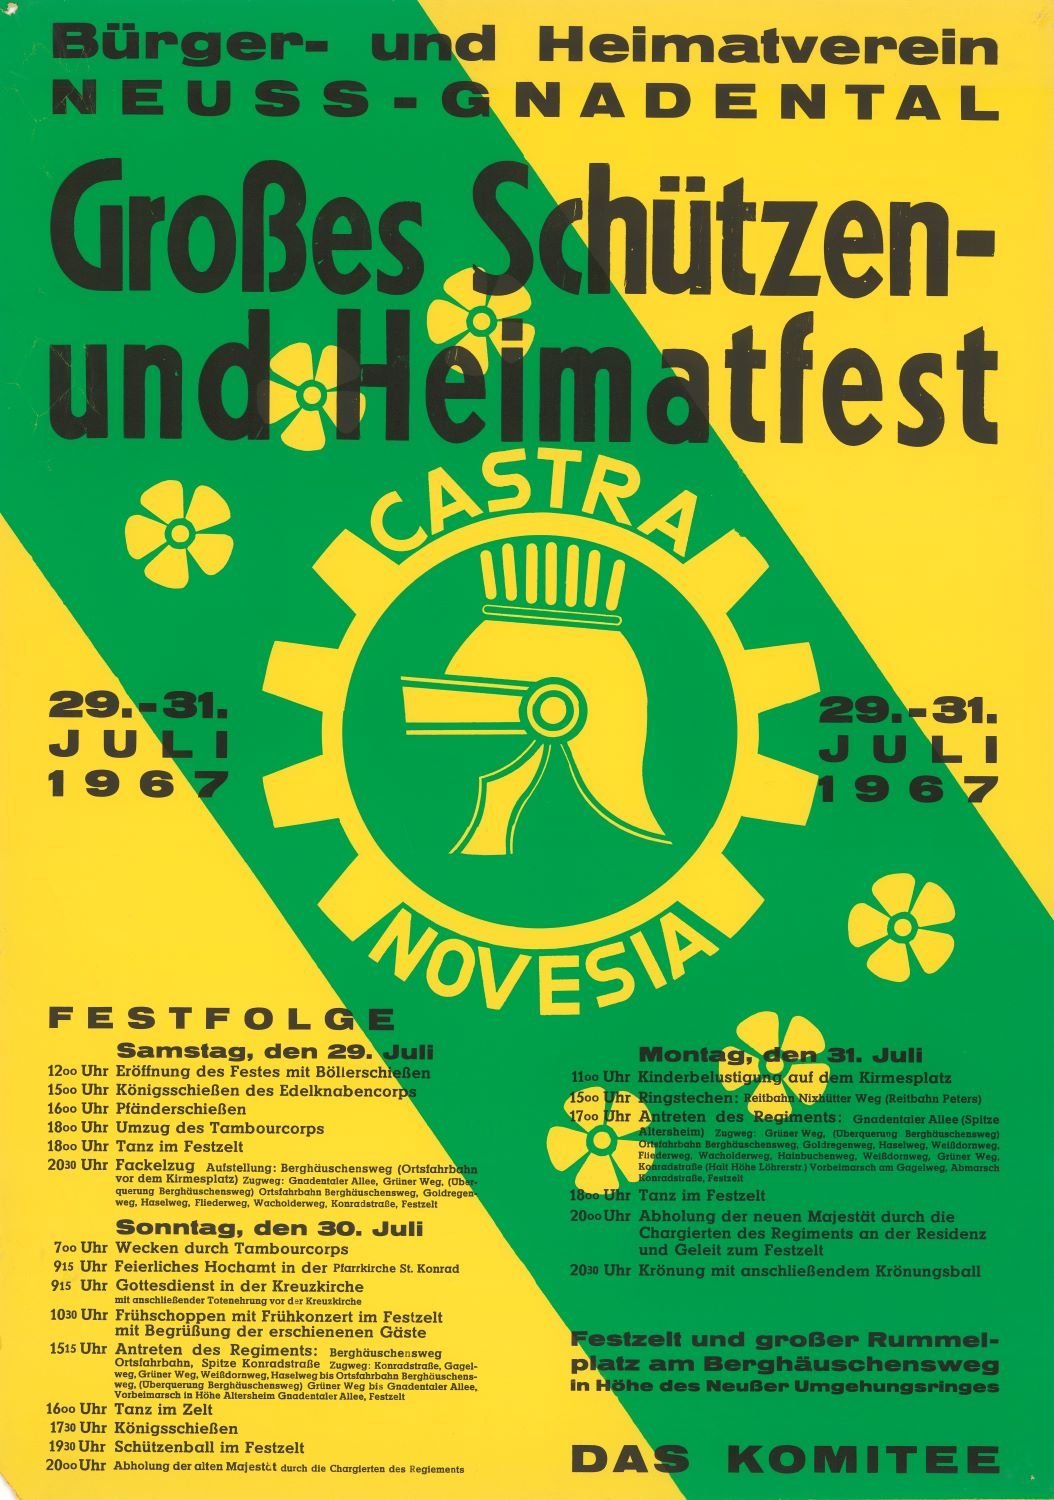 Festplakat Schützenfest Neuss-Gnadental 1967 (Rheinisches Schützenmuseum Neuss CC BY-NC-SA)